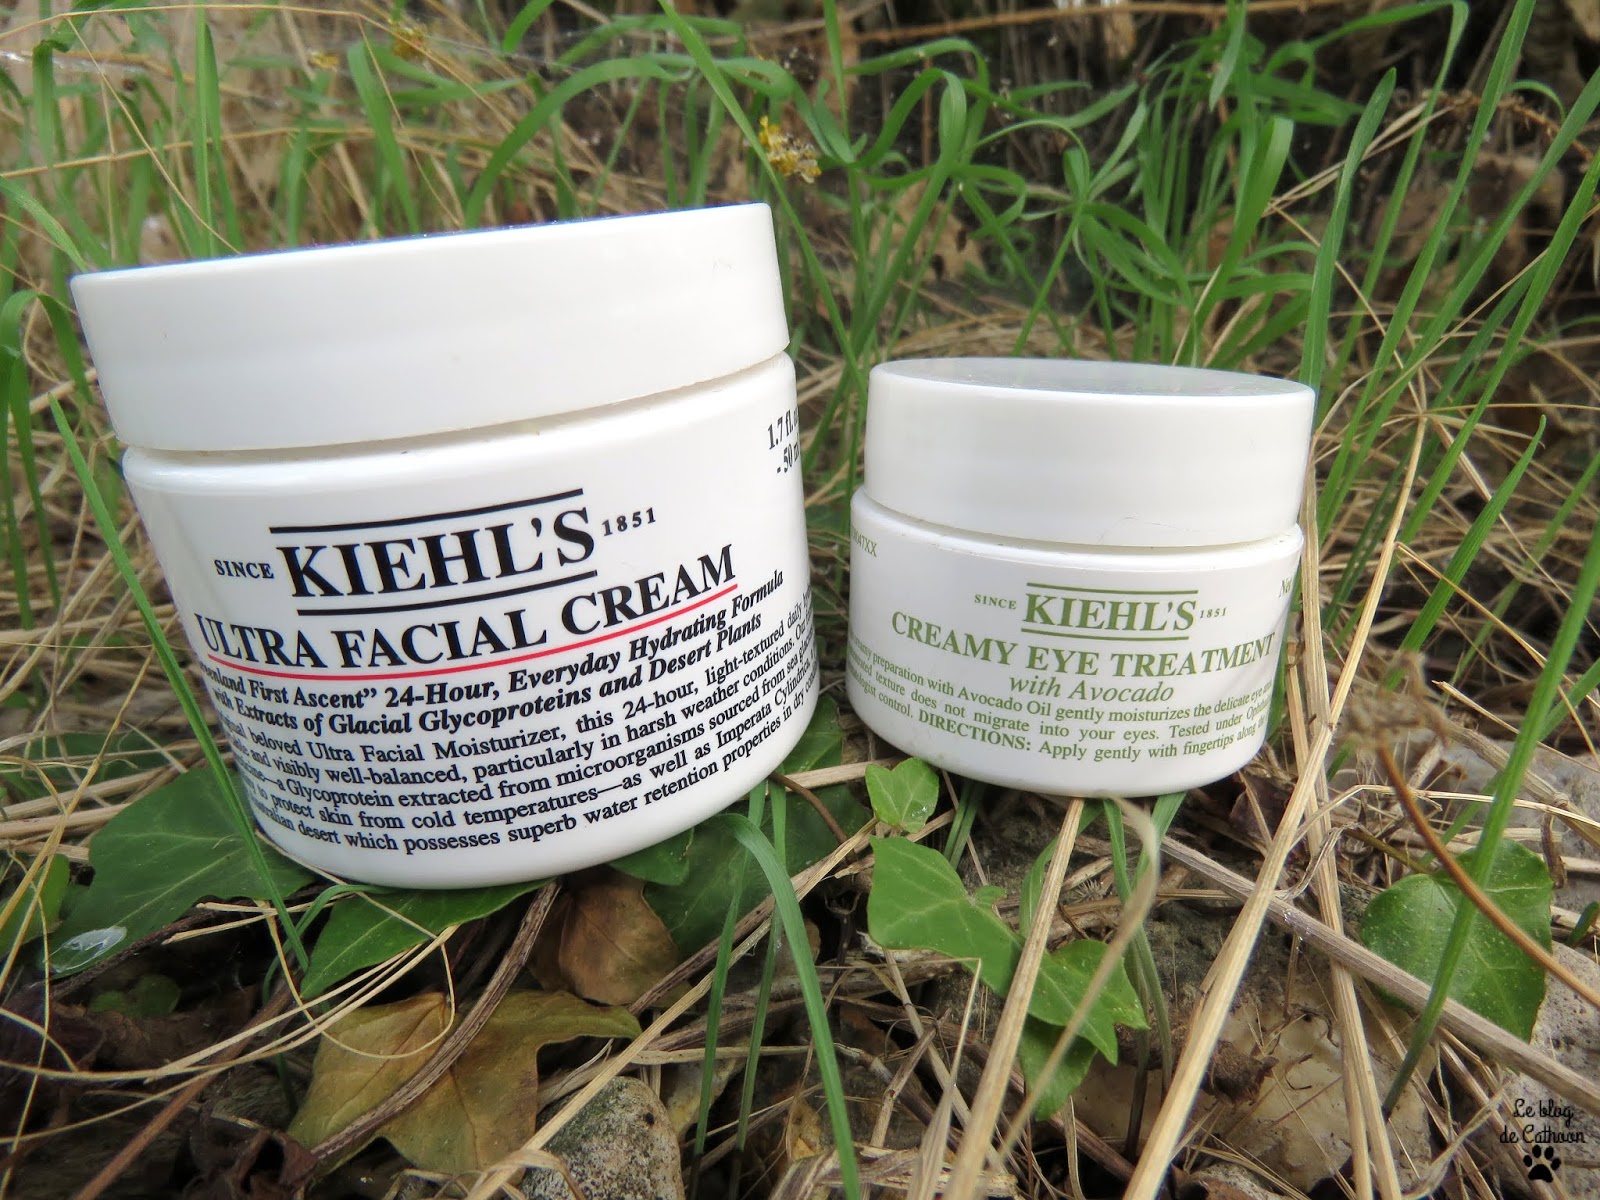 Creamy Eye Treatement with Avocado - Kiehl's Ultra Facial Cream - Kiehl's